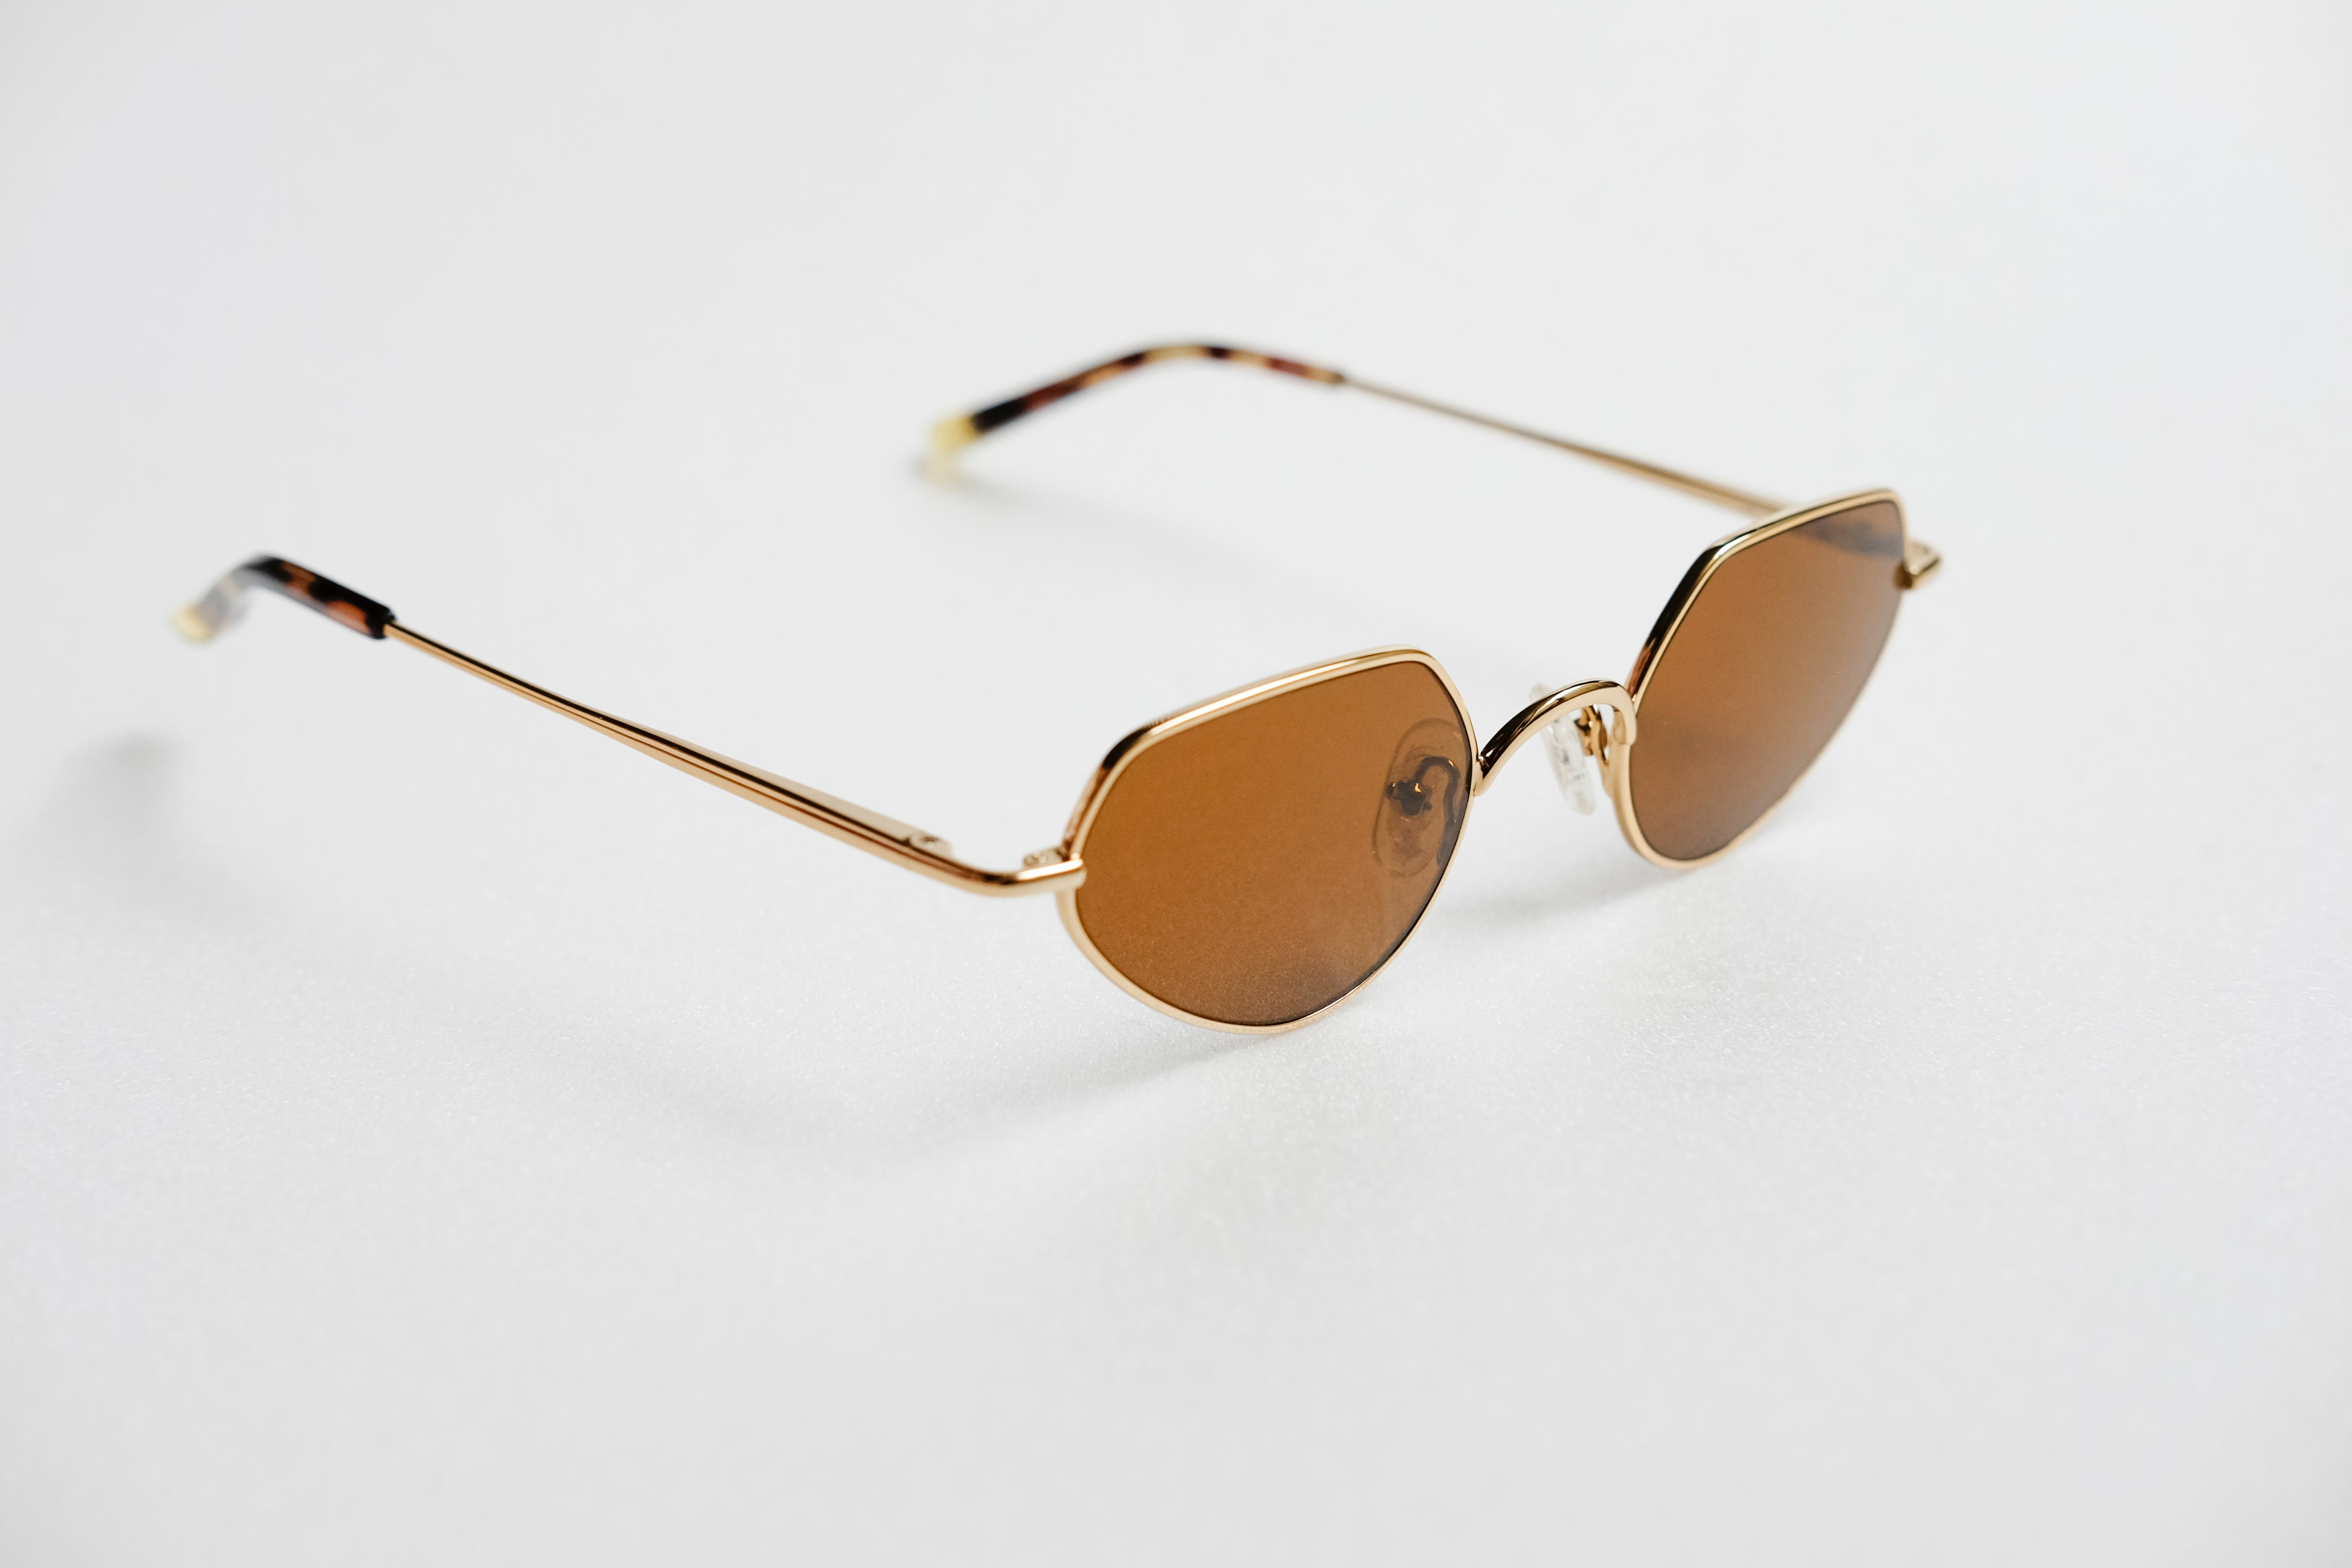 Vintage Linda Farrow sunglasses